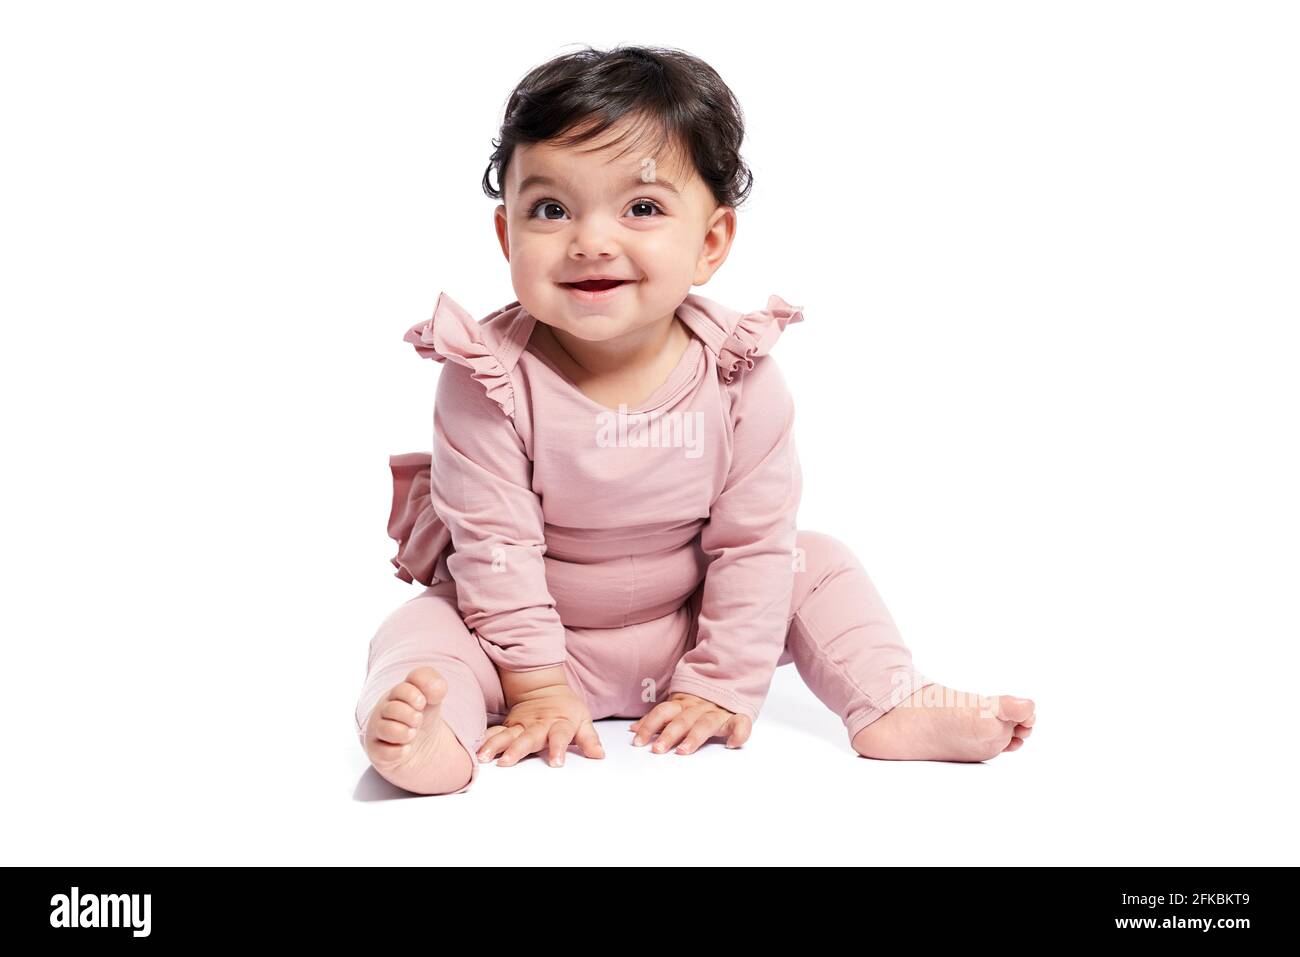 Niedliches weibliches Baby im schönen rosa Outfit lächelnd mit offenem Mund. Attraktives kleines Baby, das auf dem Boden sitzt und posiert, isoliert auf weißem Studiohinterzimmer Stockfoto